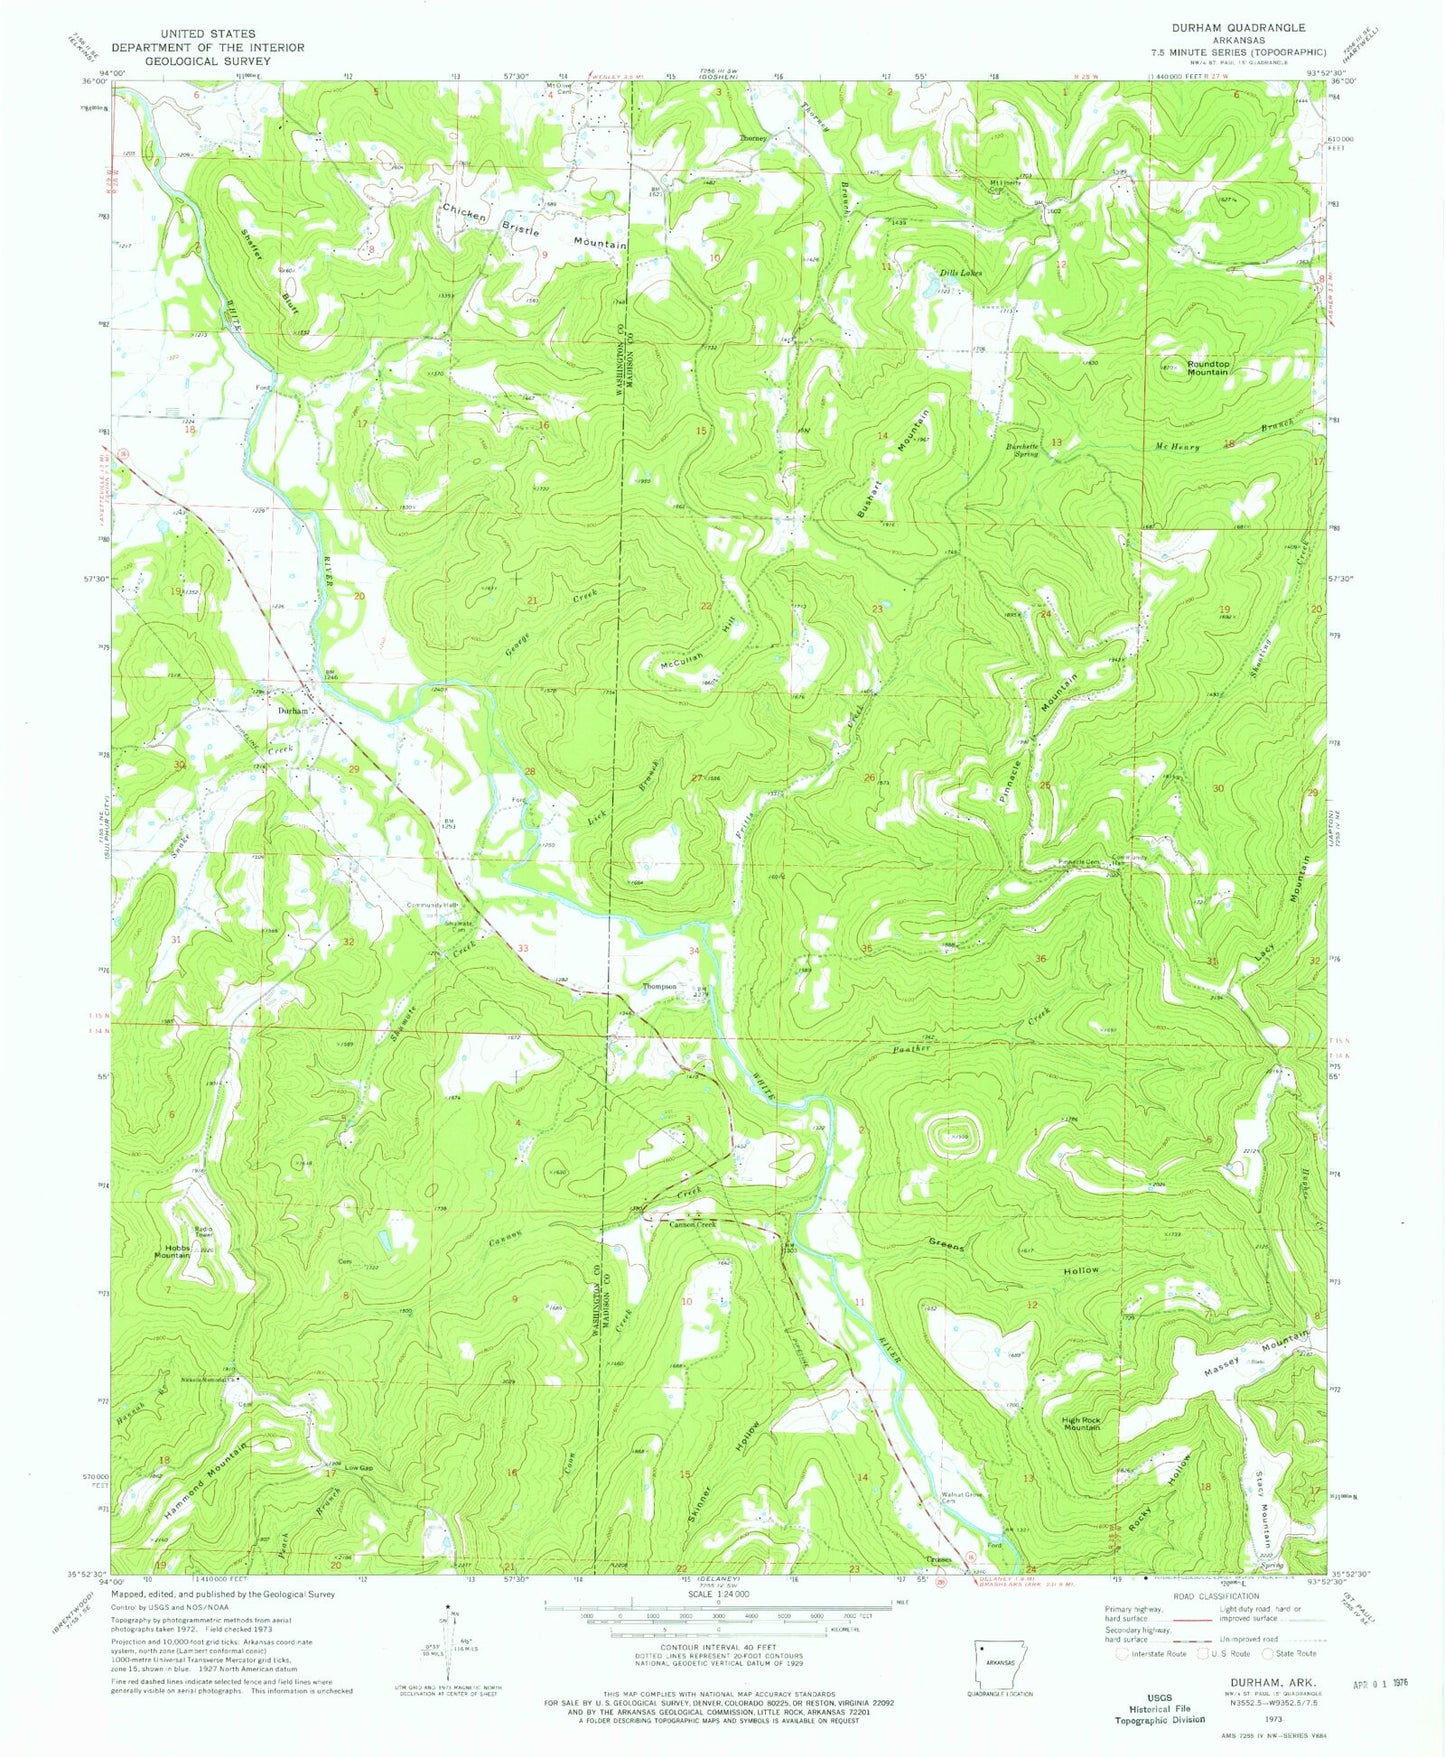 Classic USGS Durham Arkansas 7.5'x7.5' Topo Map Image